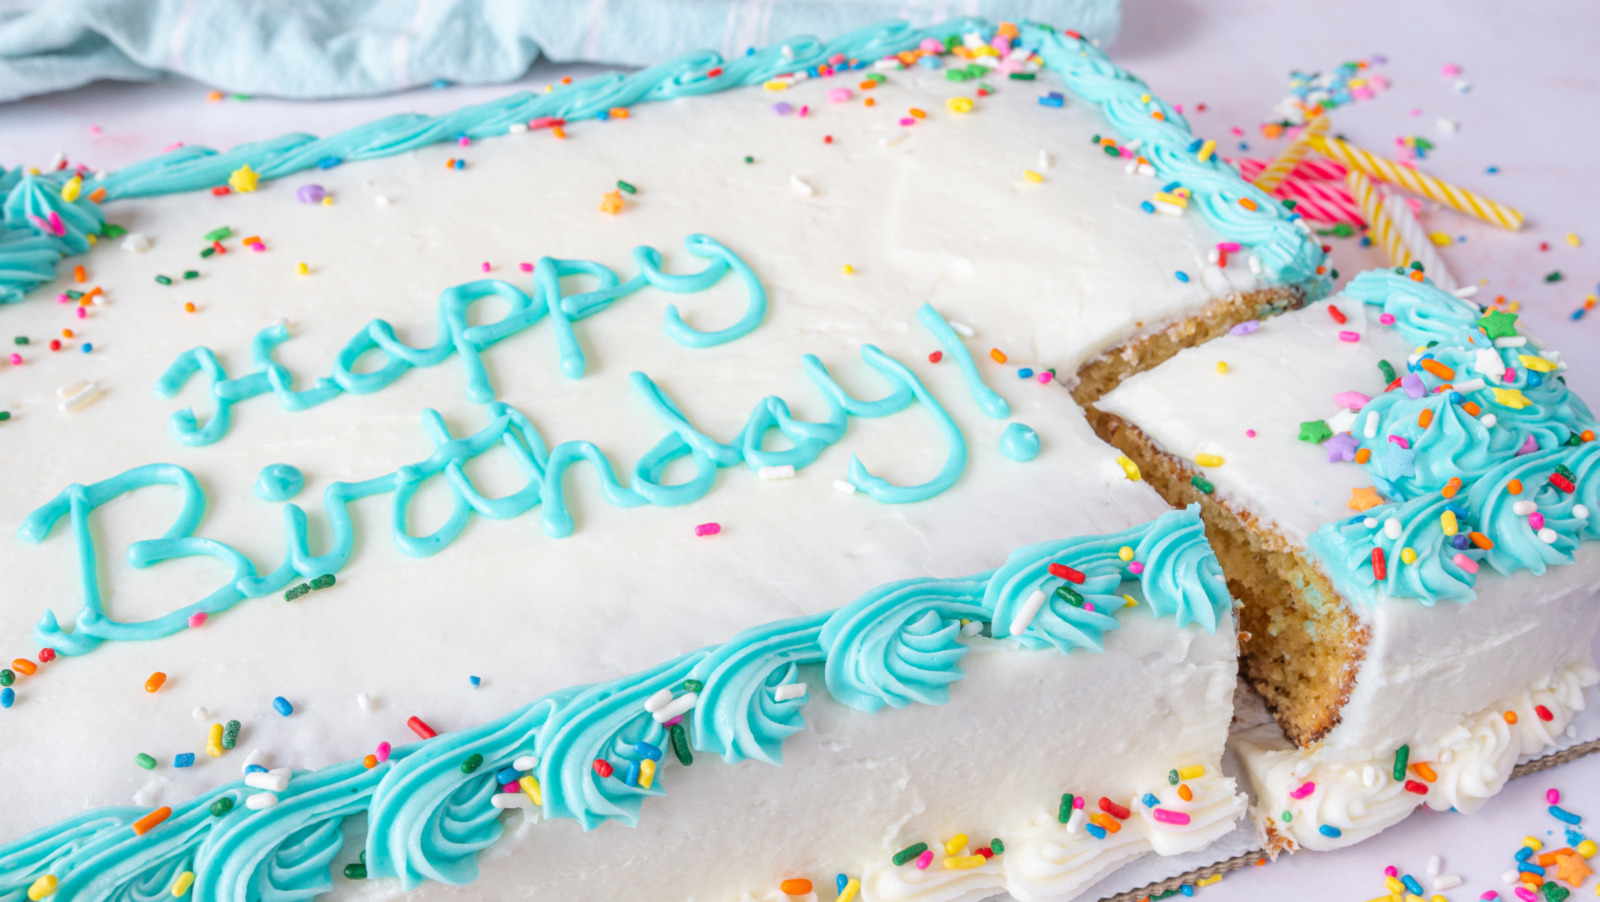 Dairy Free Birthday Cake Recipe - Daisy Cake Company